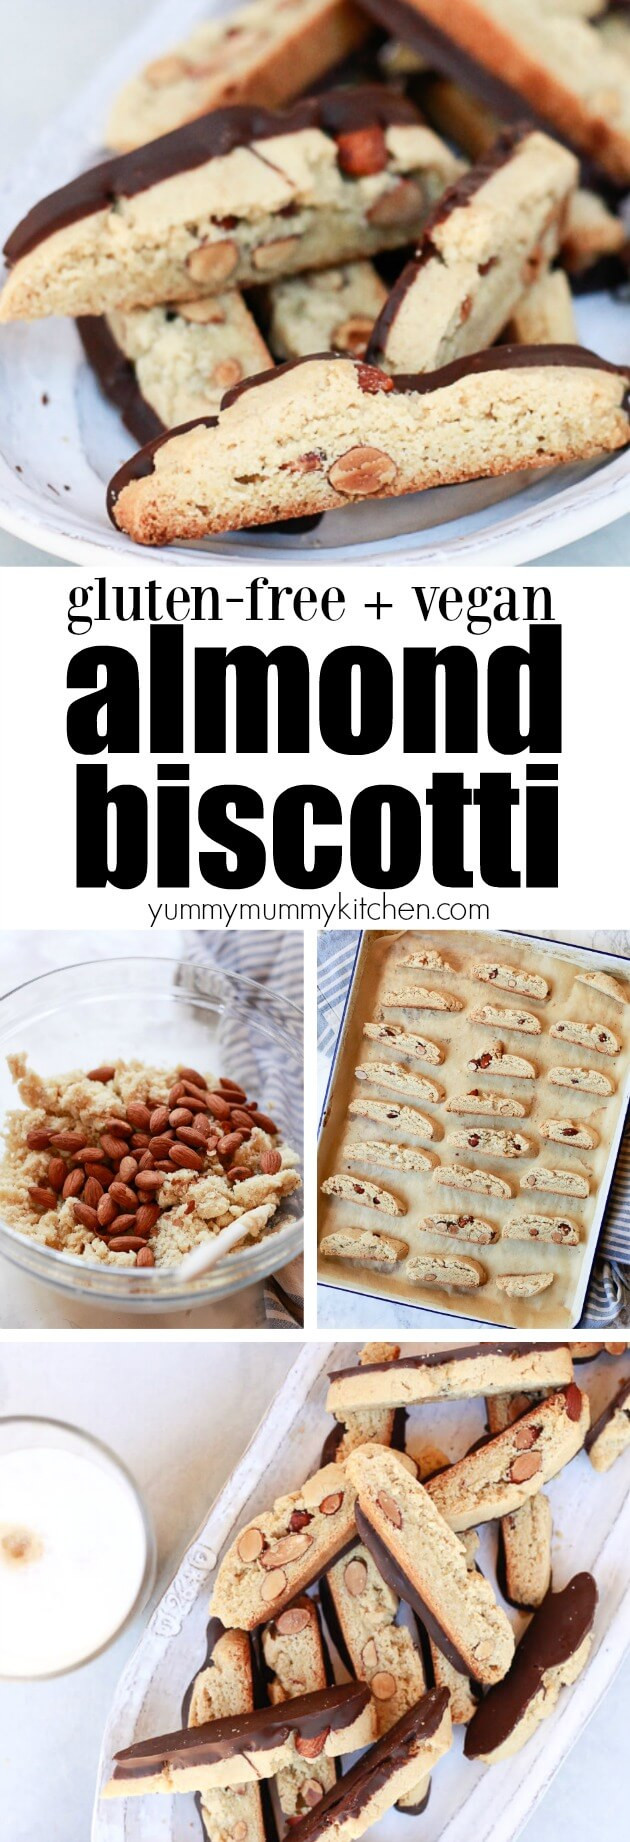 Vegan Biscotti Recipes
 Gluten Free Vegan Almond Biscotti Recipe